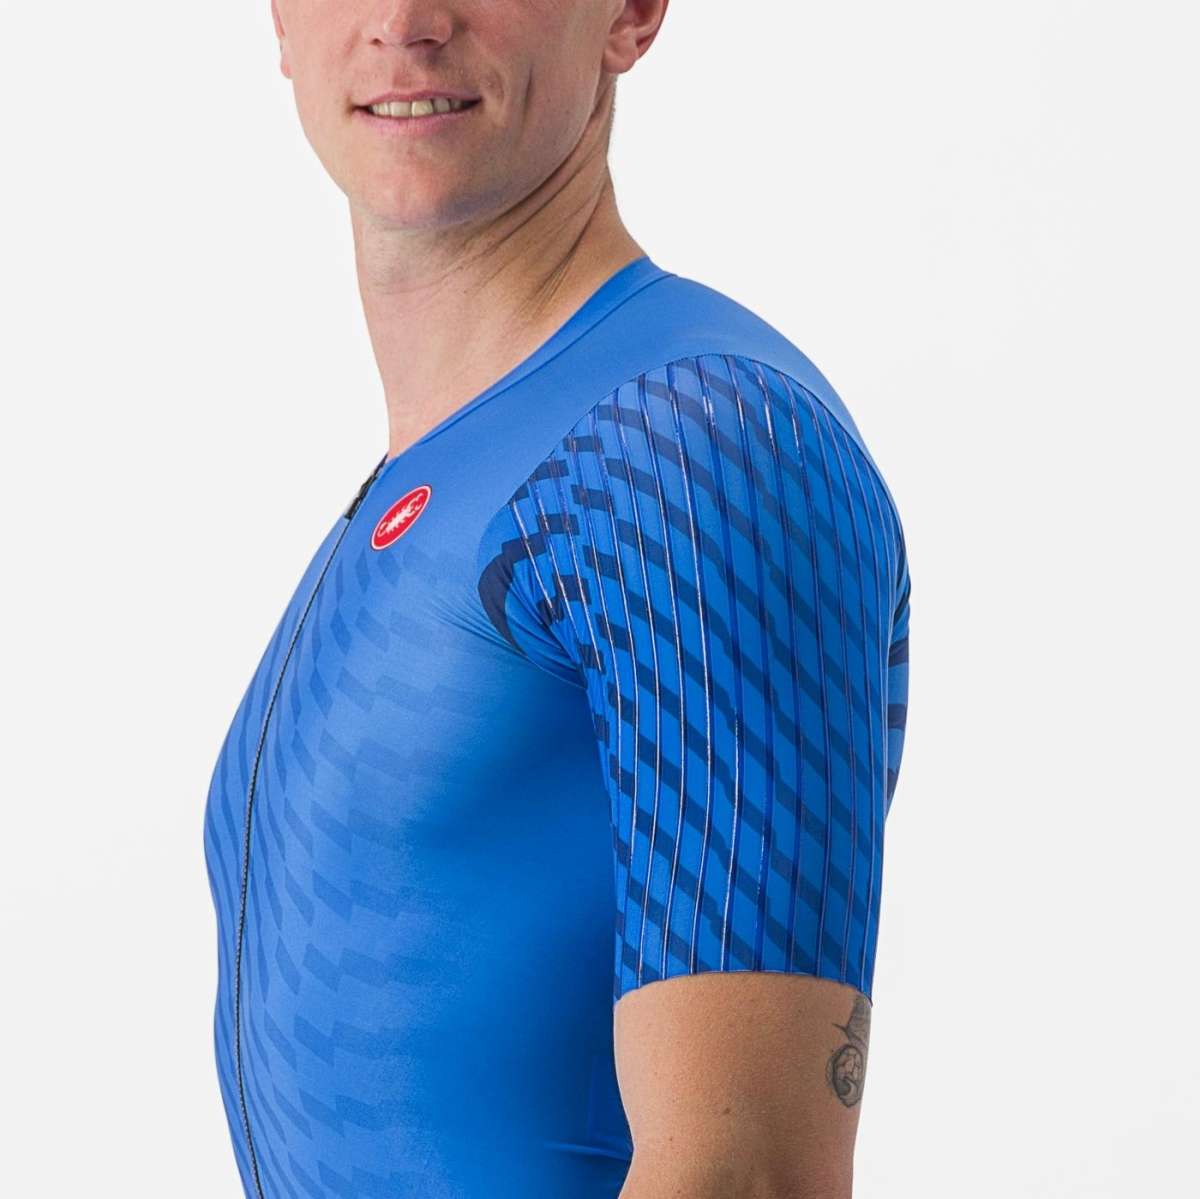 Castelli PR 2 Speed Men's Cycling Suit (Drive Blue)